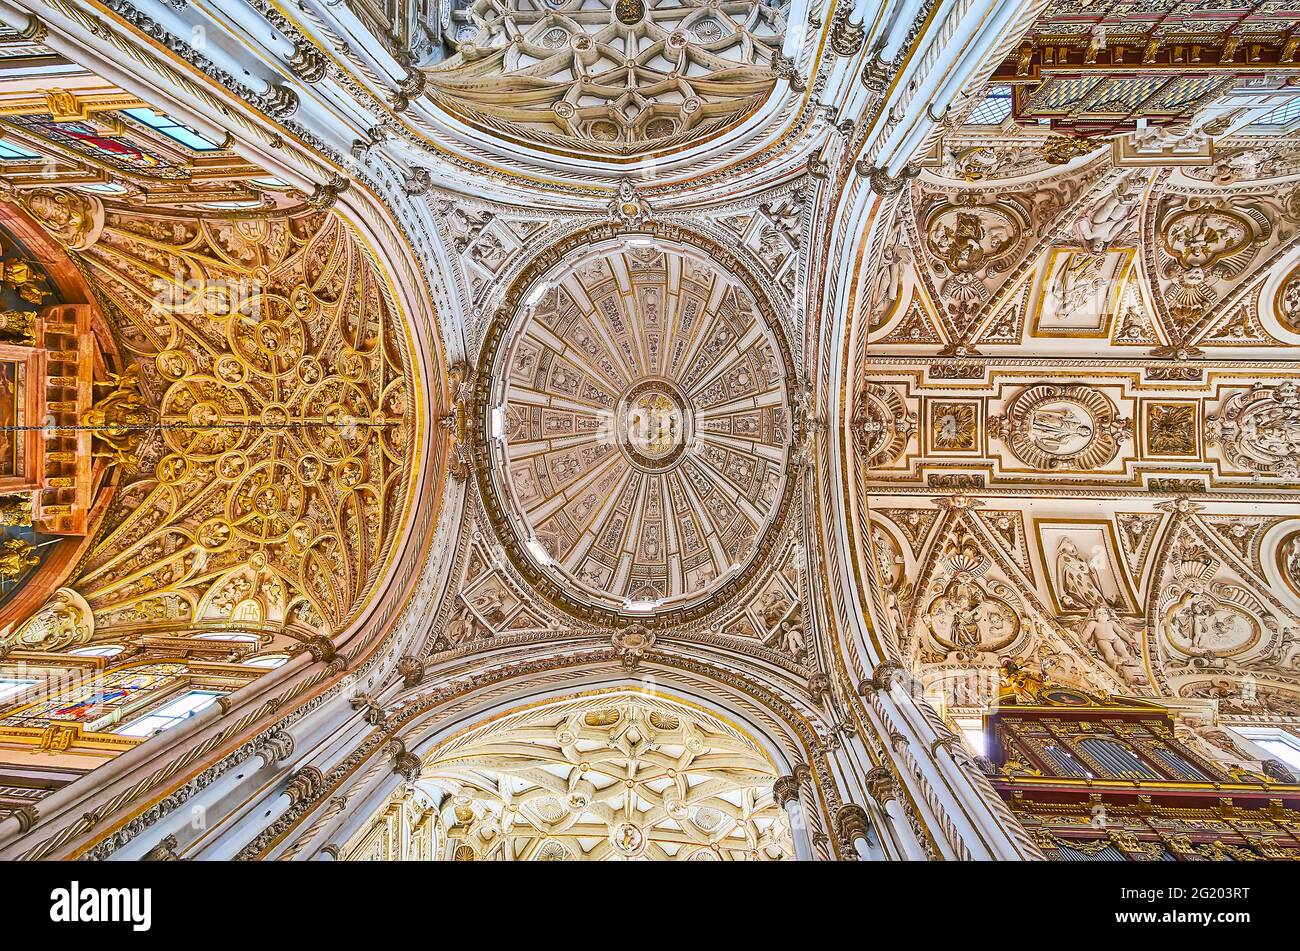 CORDOBA, SPANIEN - SEP 30, 2019: Die Hauptkuppel und das Gewölbe der Capilla Mayor (Hauptkapelle) von Mezquita-Kathedrale mit gotischen Schnitzereien, Stuckverzierungen und p Stockfoto